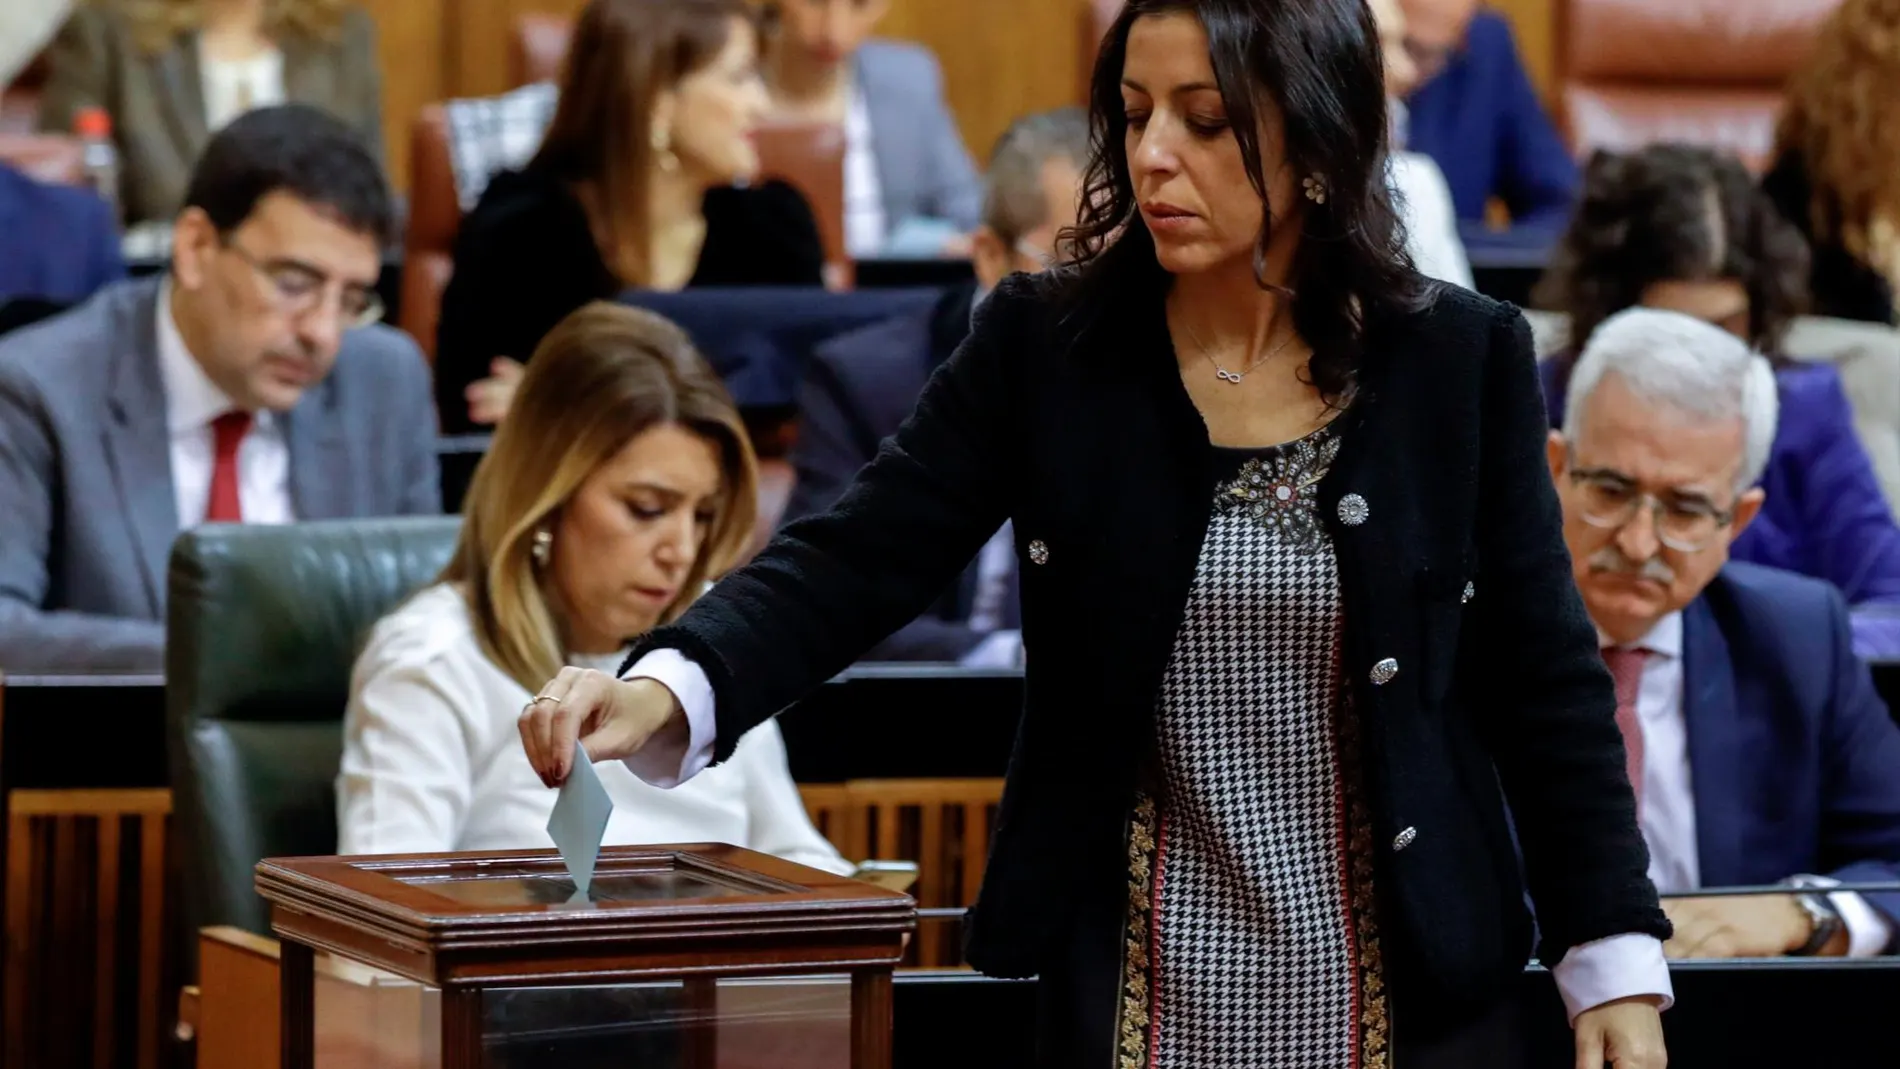 La diputada almeriense de Ciudadanos Marta Bosquet, que ha sido elegida presidenta de la Cámara autonómica, durante su votación para elegir los miembros de la Mesa